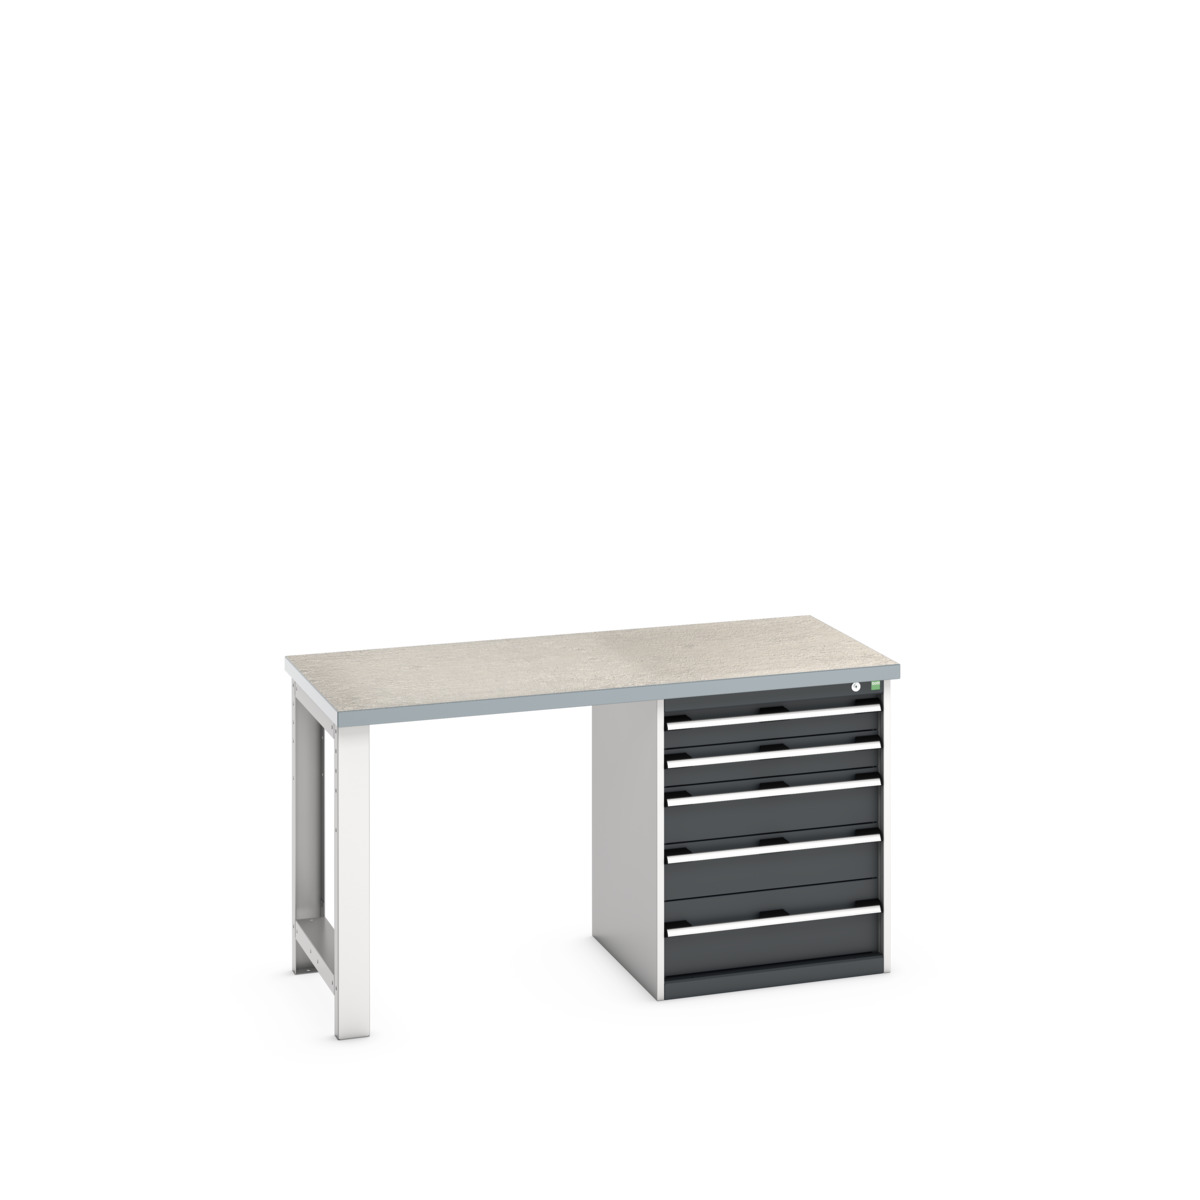 41003135.19V - cubio pedestal bench (lino)